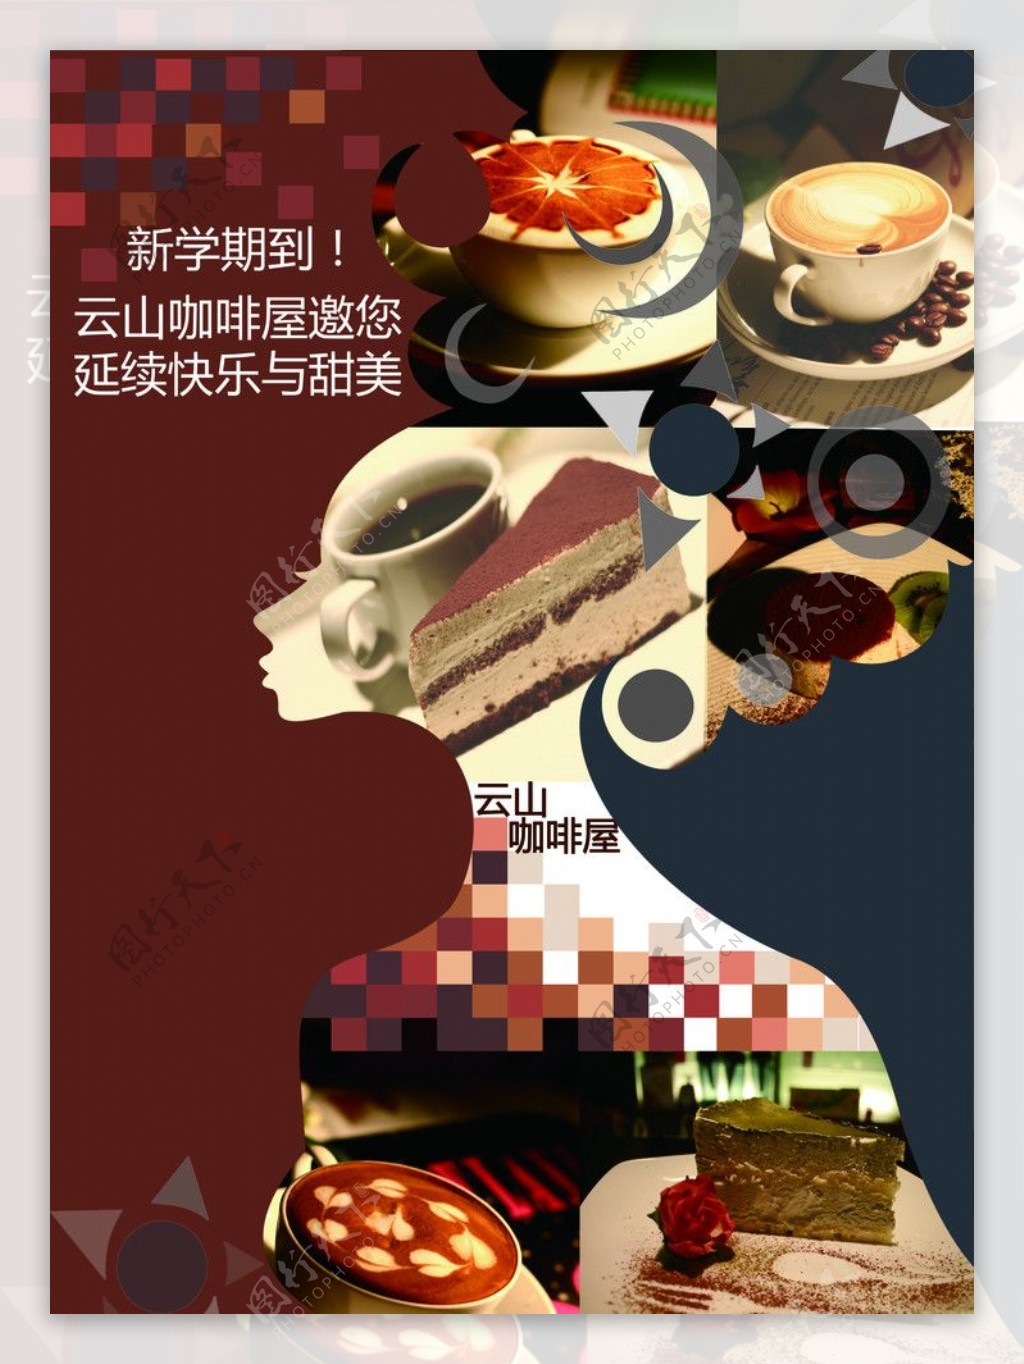 咖啡屋宣传海报图片